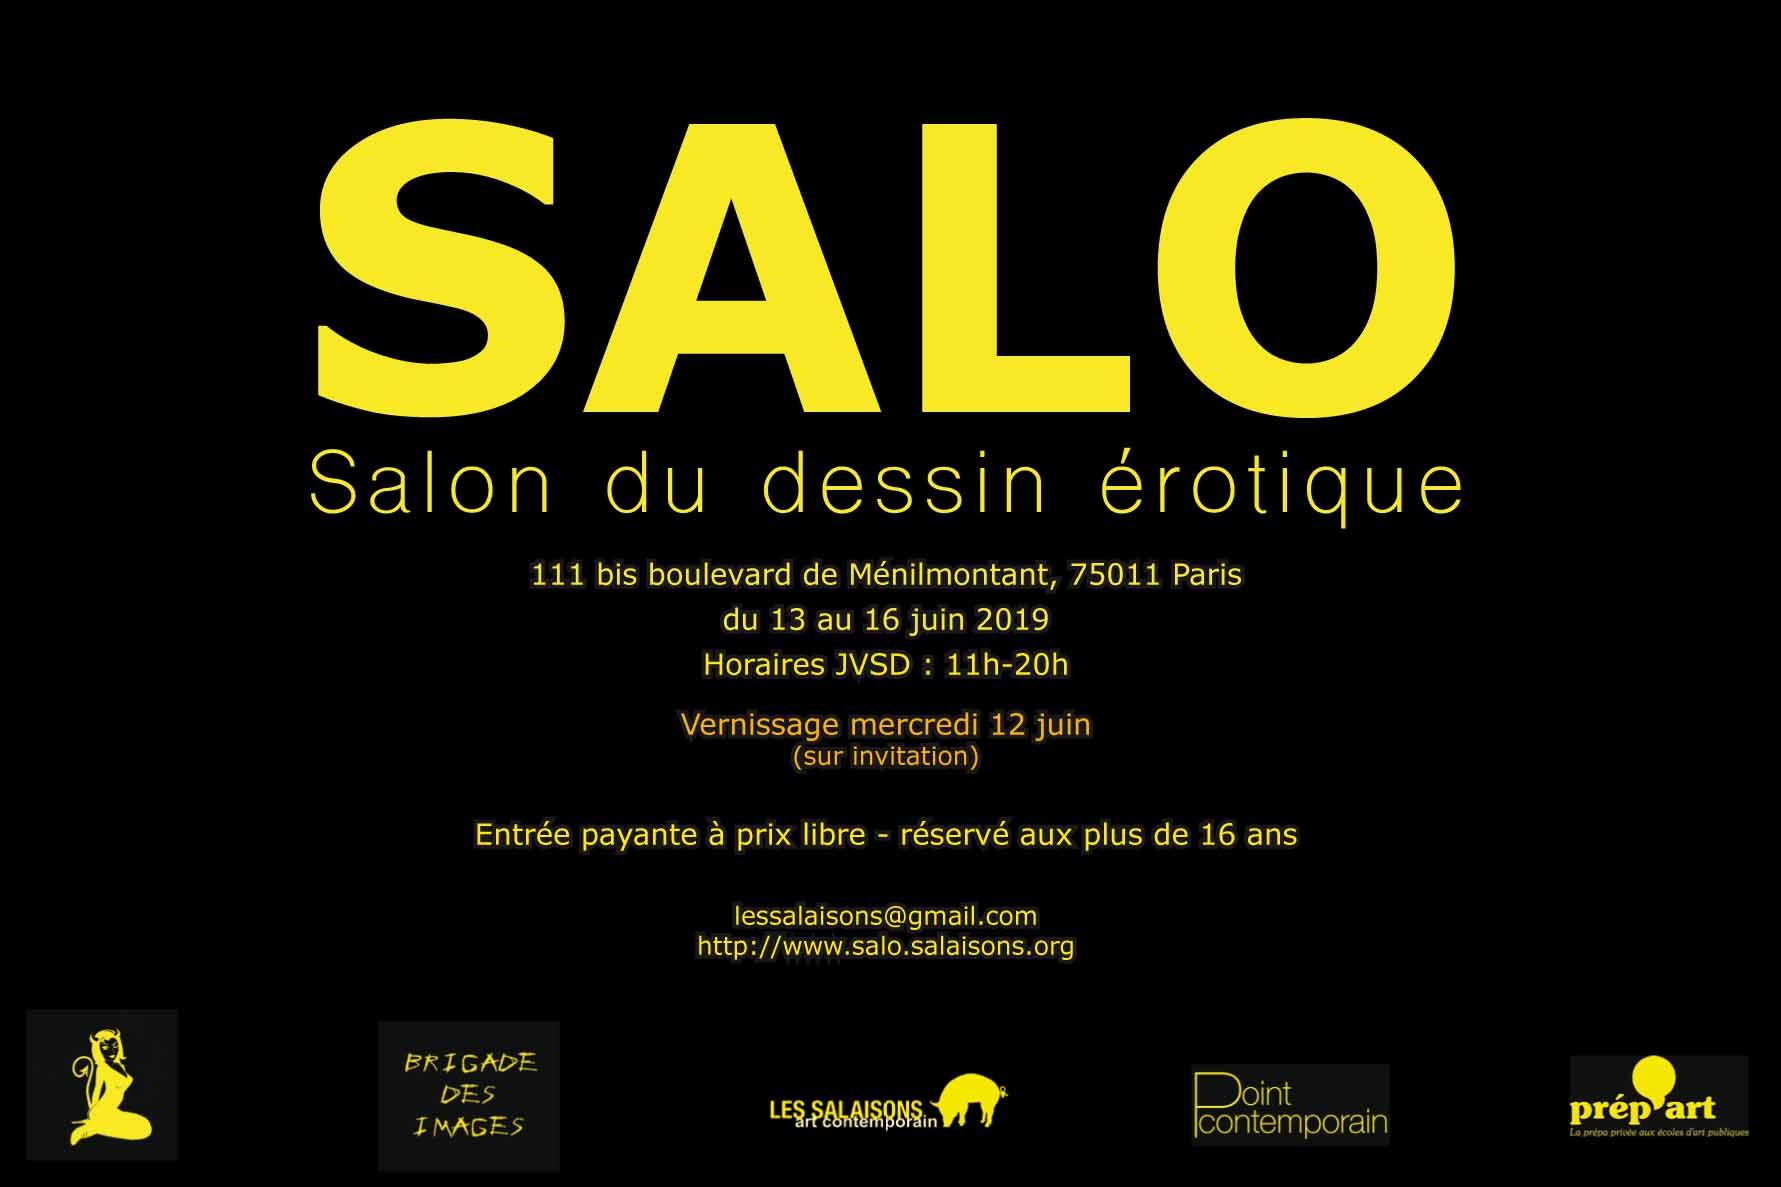 Le SALO, salon du dessin érotique du 13 au 16 juin 2019 à Paris